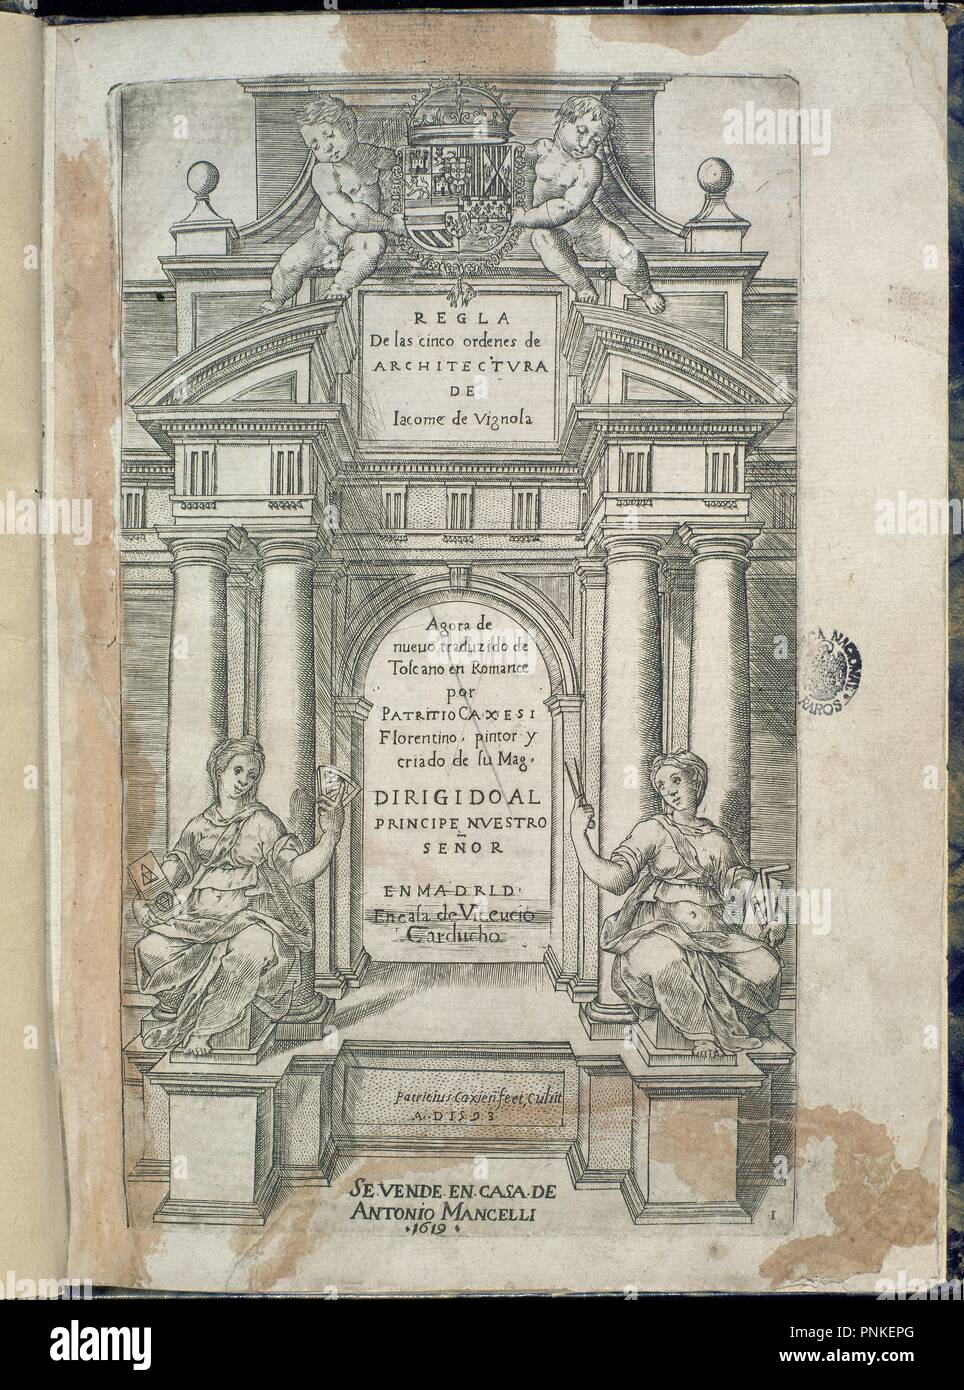 REGLA DE LOS CINCO ORDENES DE ARQUITECTURA - SIGLO XVI - EDICION DE 1619.  Author: VIGNOLA, JACOPO BAROZZI. Location: BIBLIOTECA NACIONAL-COLECCION.  MADRID. SPAIN Stock Photo - Alamy